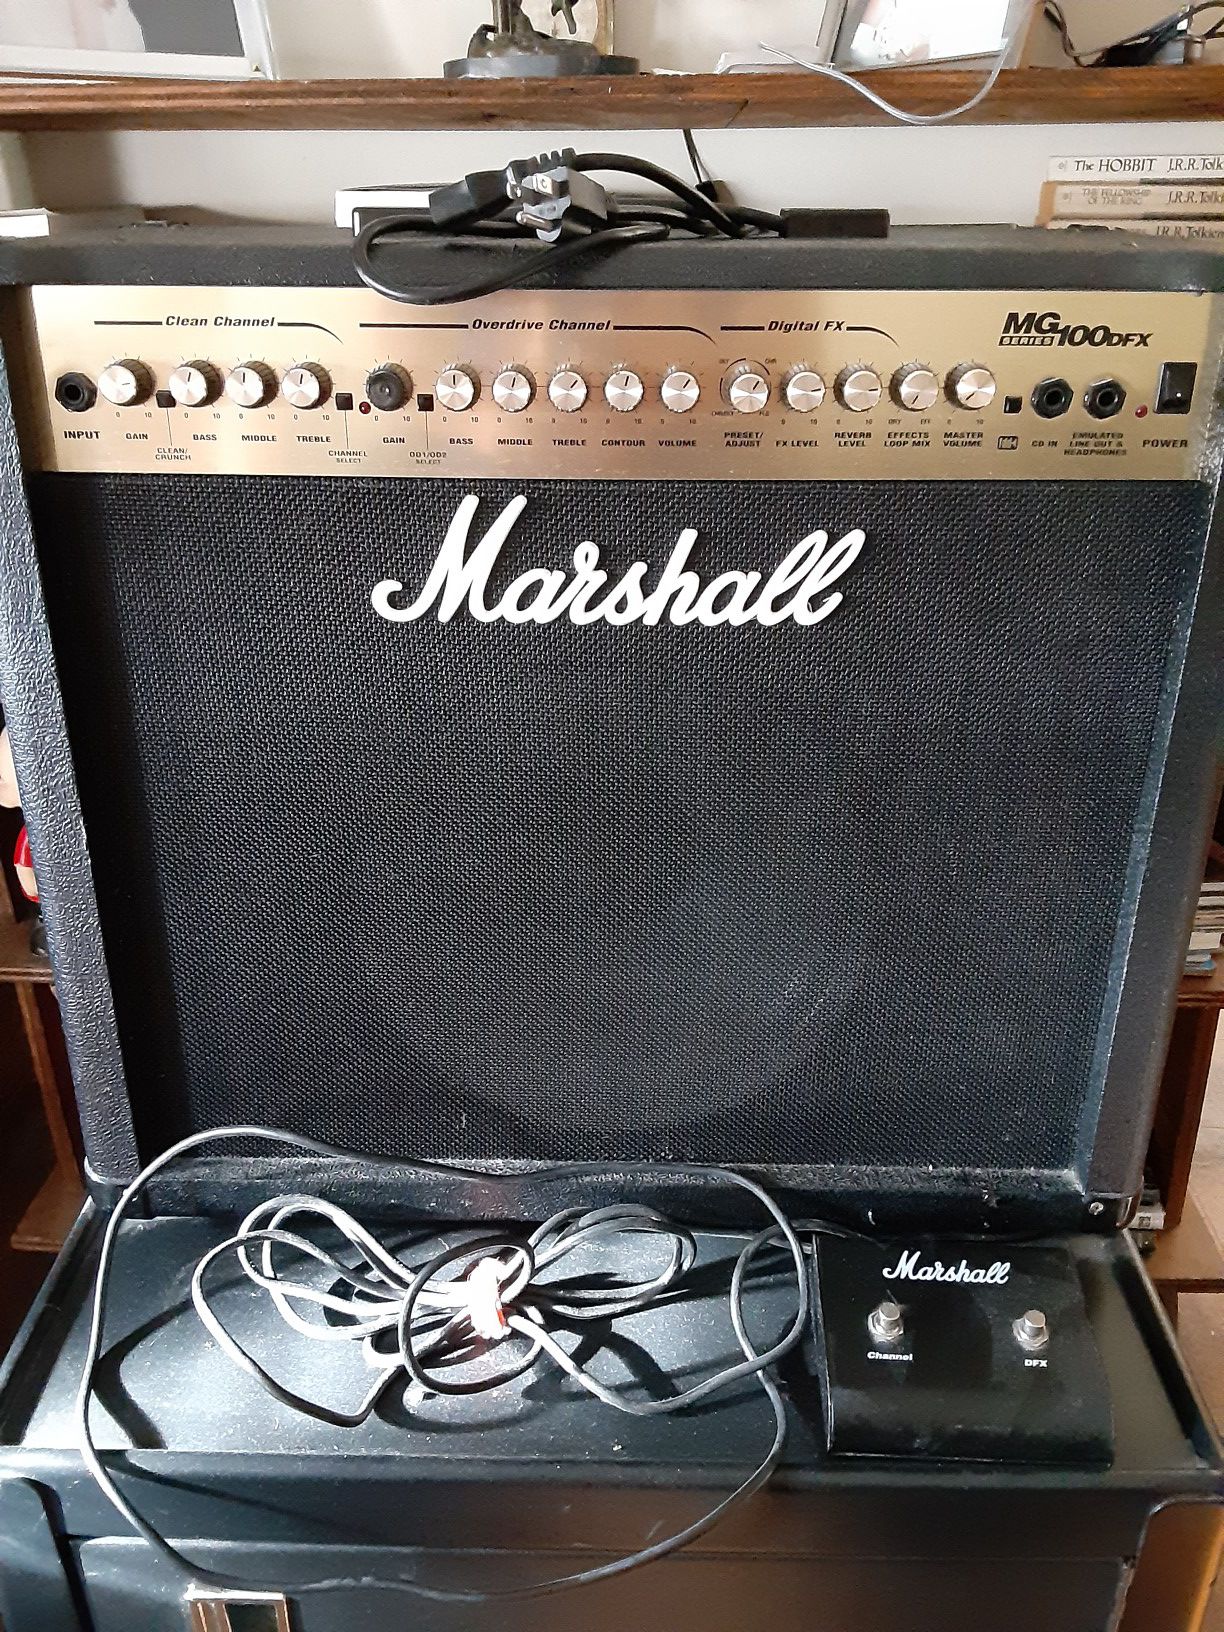 Good price,big sound,MG Series Marshall 100DFX 100 WATTS